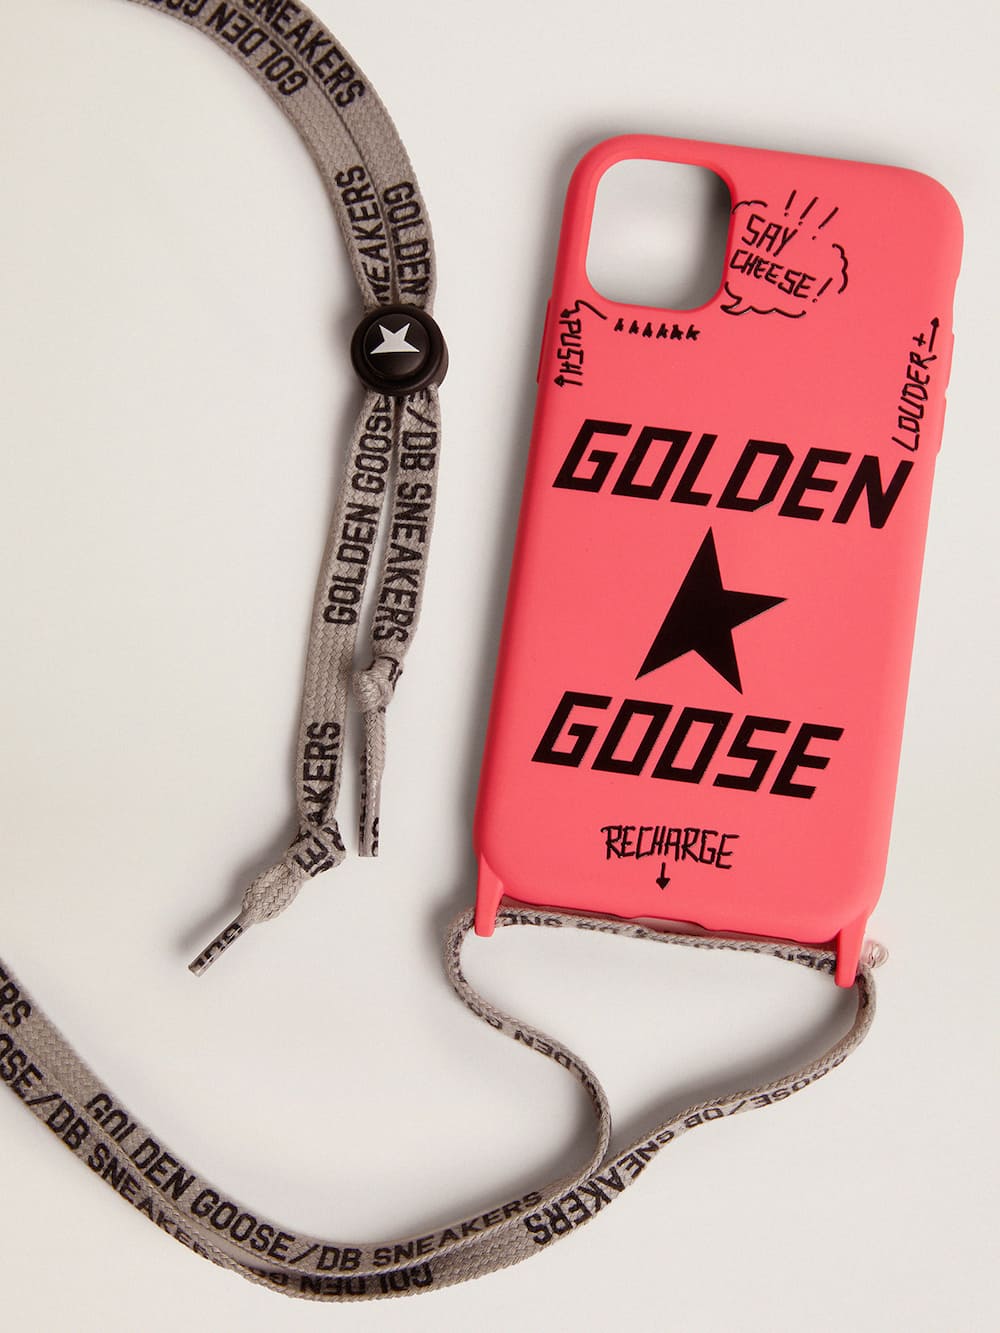 Golden Goose - Cover per iPhone 12 e 12 Pro di colore fucsia con logo nero a contrasto in 